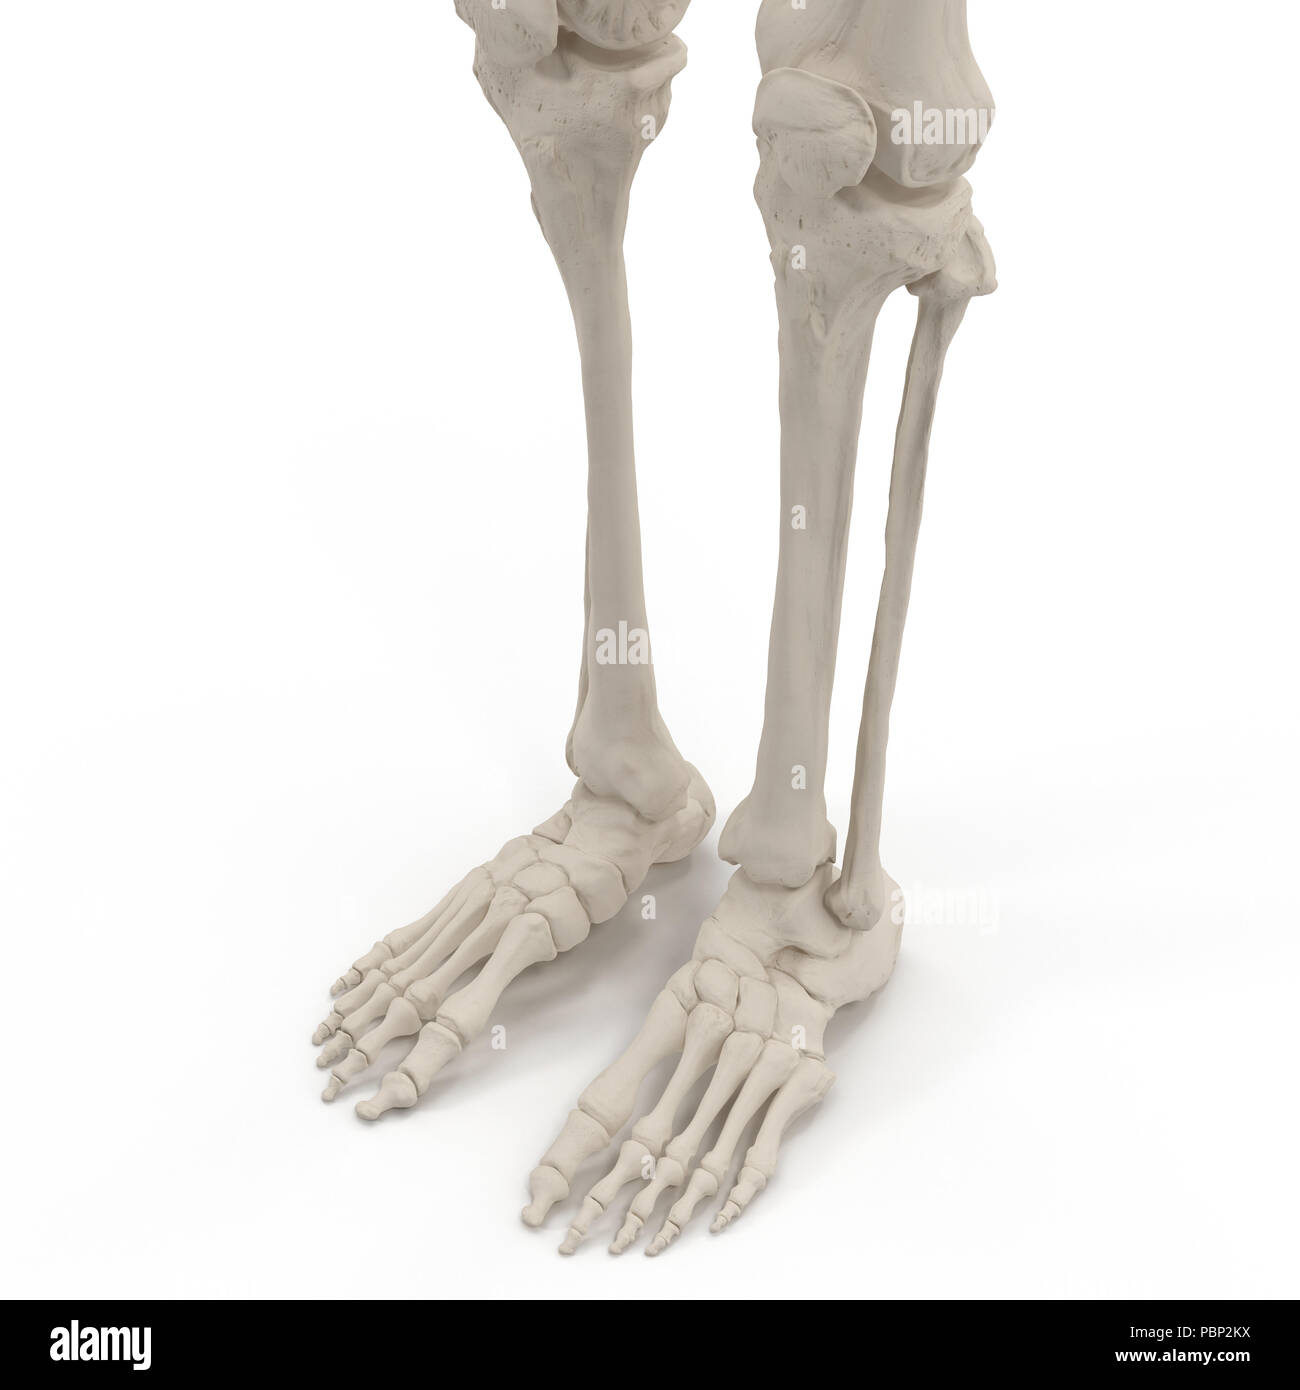 1 скелет голени. Титановый скелет ноги. Ступни скелета белые. Ступни скелета, темные. Нога мужская и женская кости.